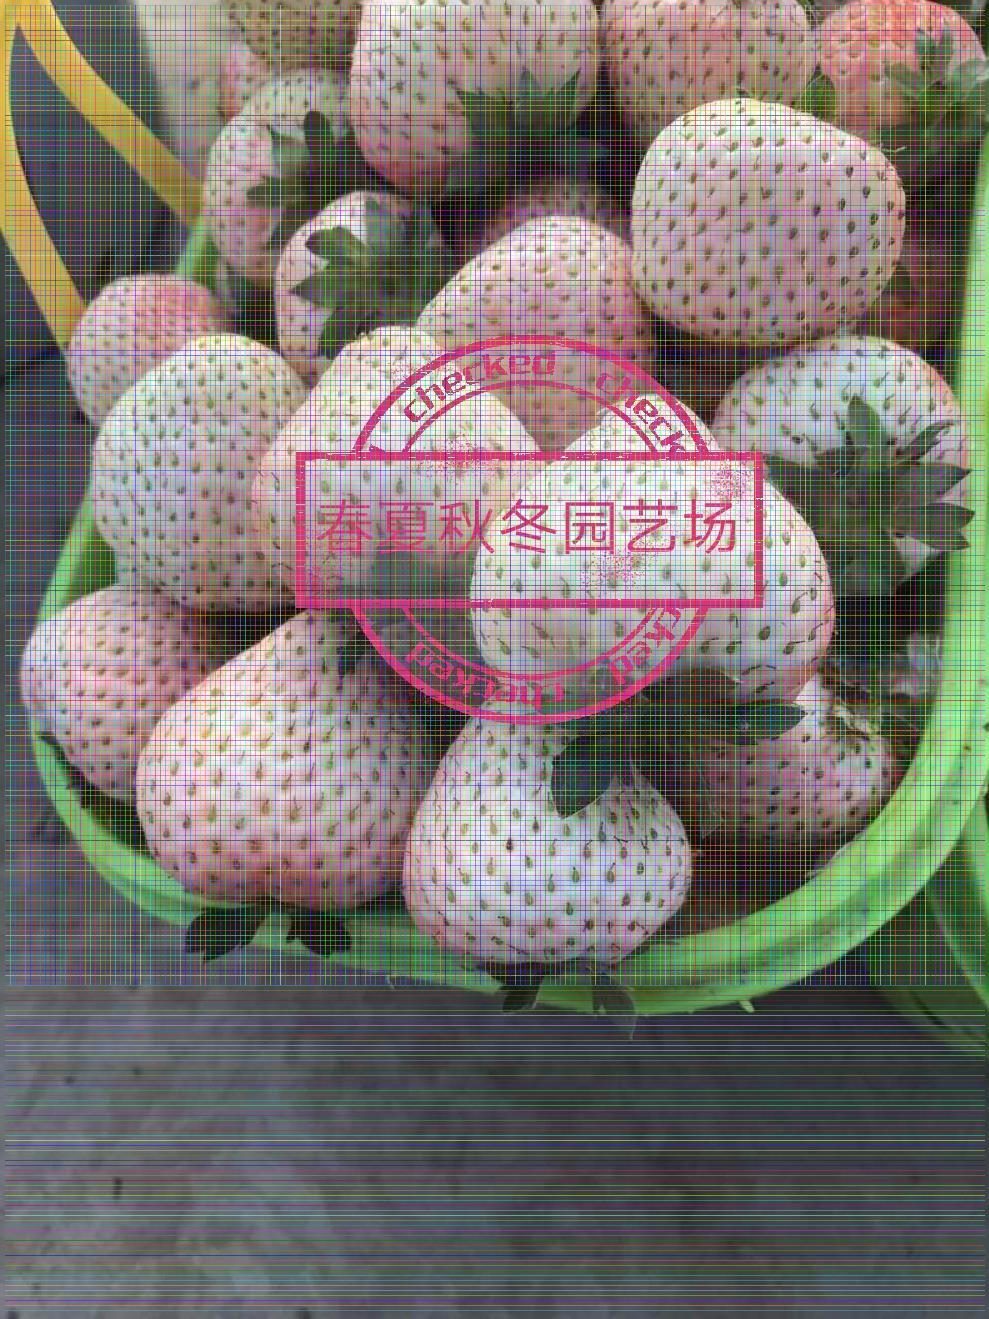 奉节蓝色妖姬草莓苗/基地种植